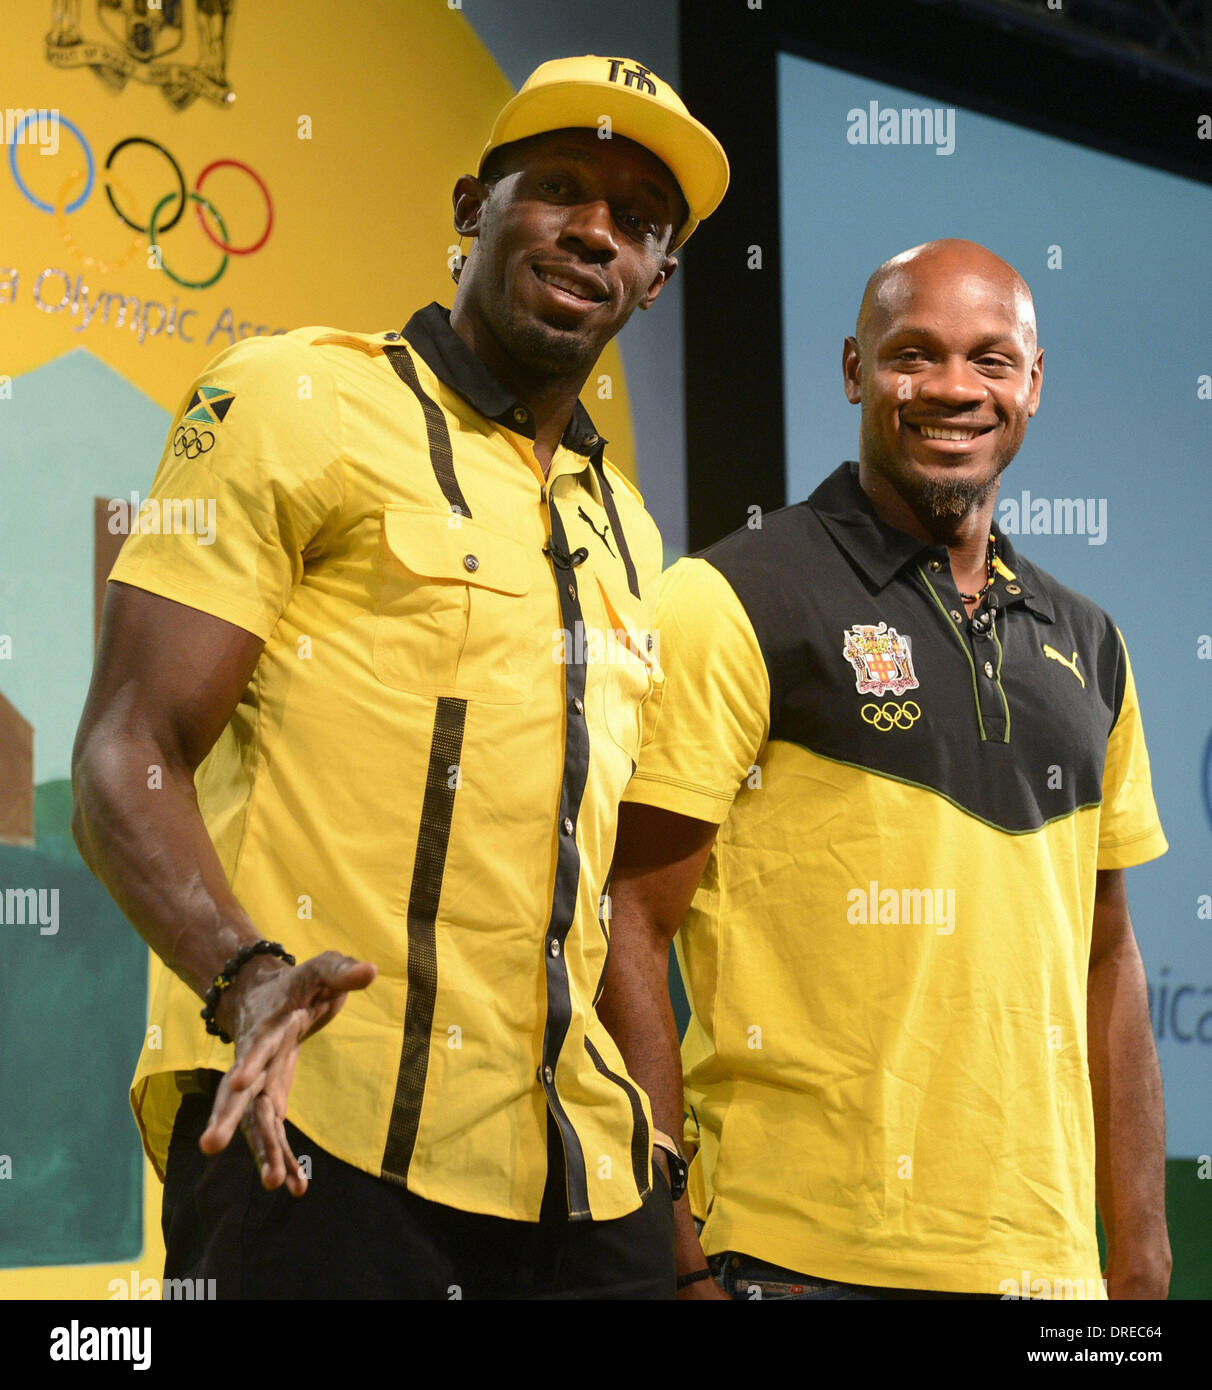 Usain Bolt de Jamaica y su compañero de equipo Asafa Powell, asistir a una conferencia de prensa en Londres Londres, Inglaterra - 26.07.12 Foto de stock